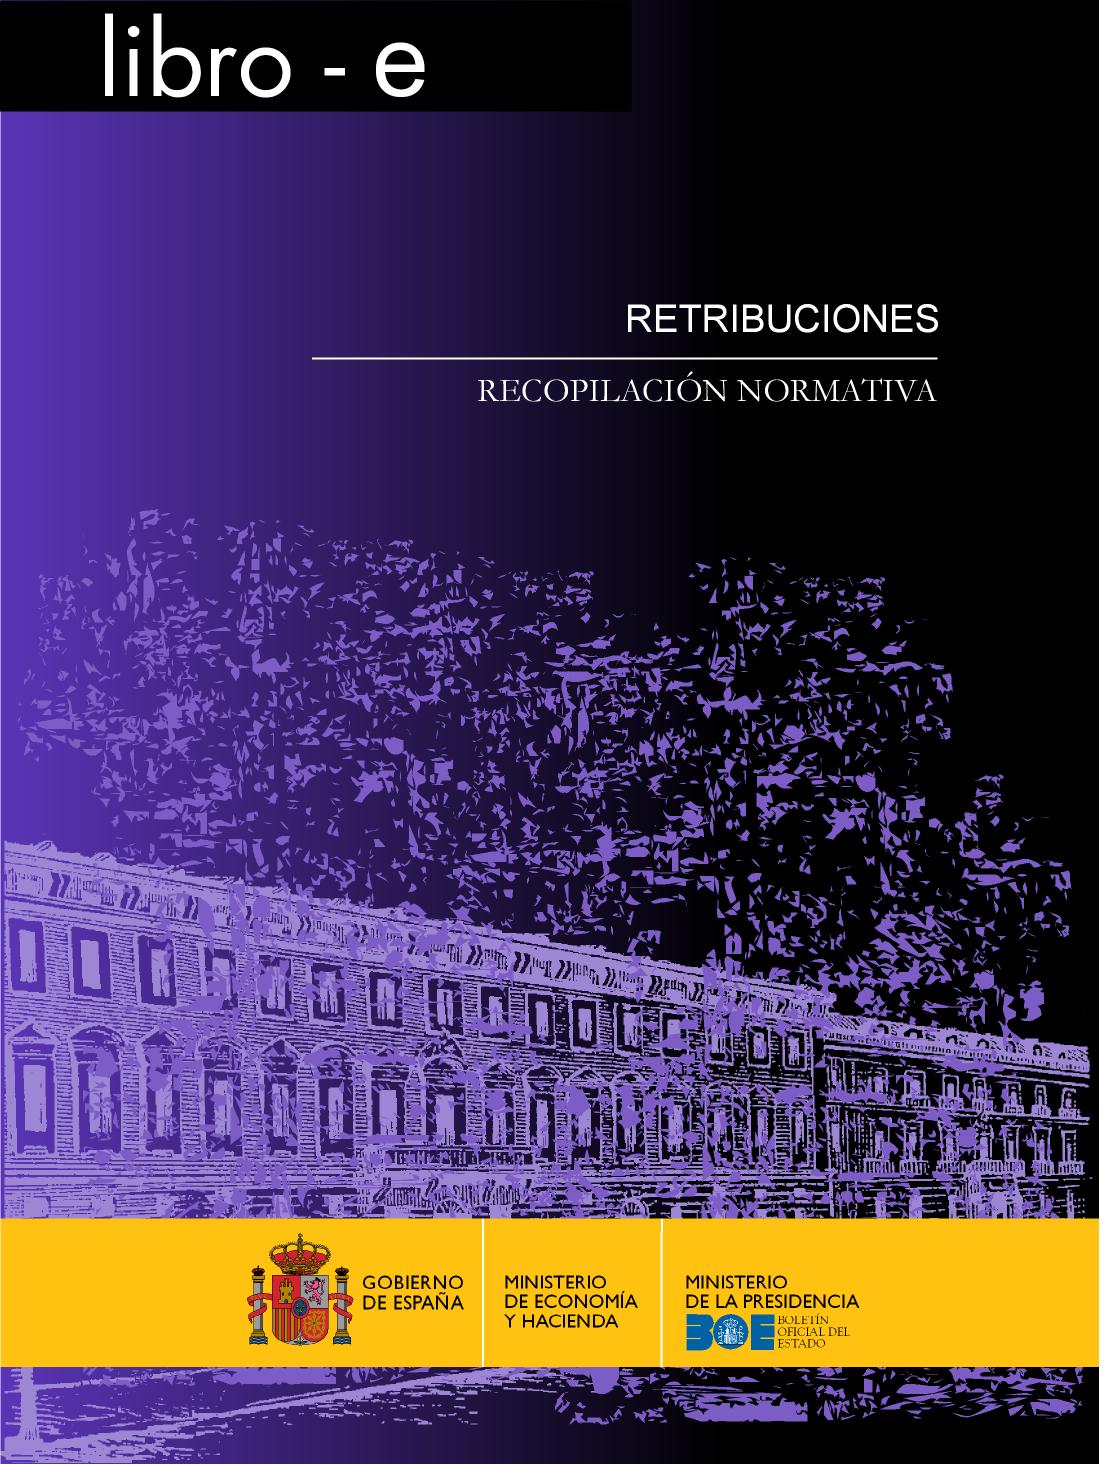 Portada del libro: RETRIBUCIONES RECOPILACIÓN NORMATIVA EDICIÓN 2010. libro-e